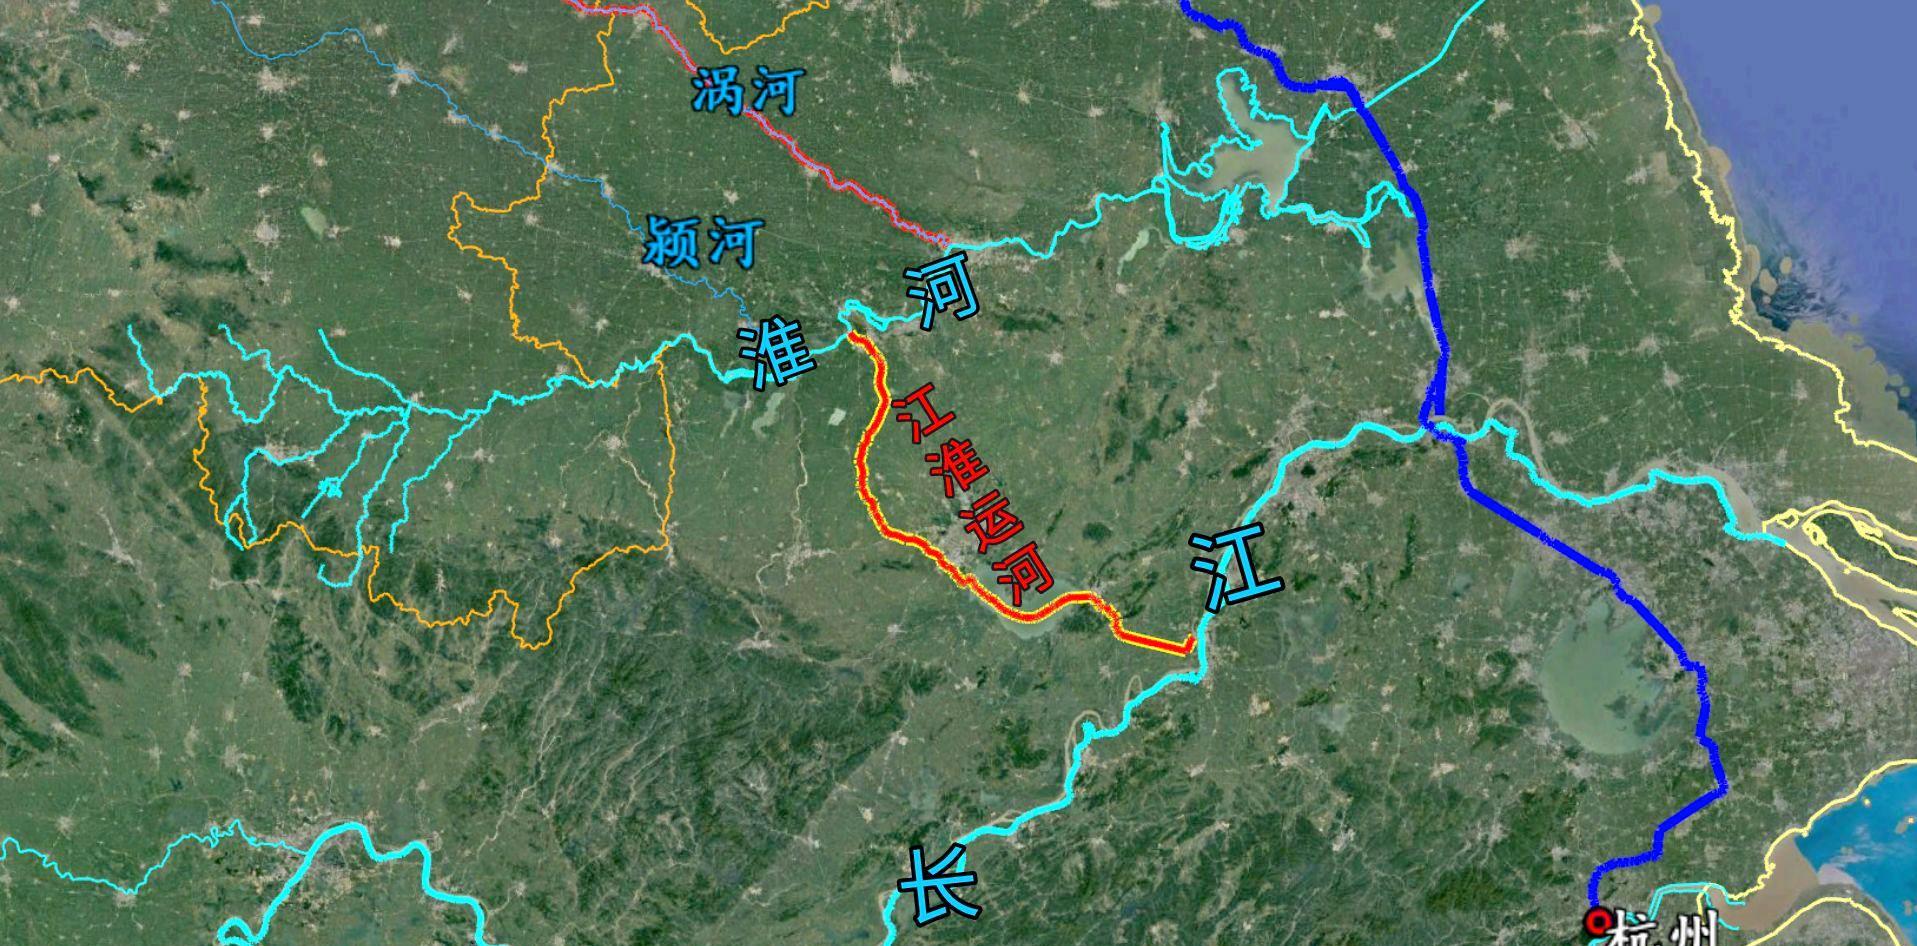 江淮运河连接淮河和长江,安徽货船可南下长江至此,长江以北的运河网络